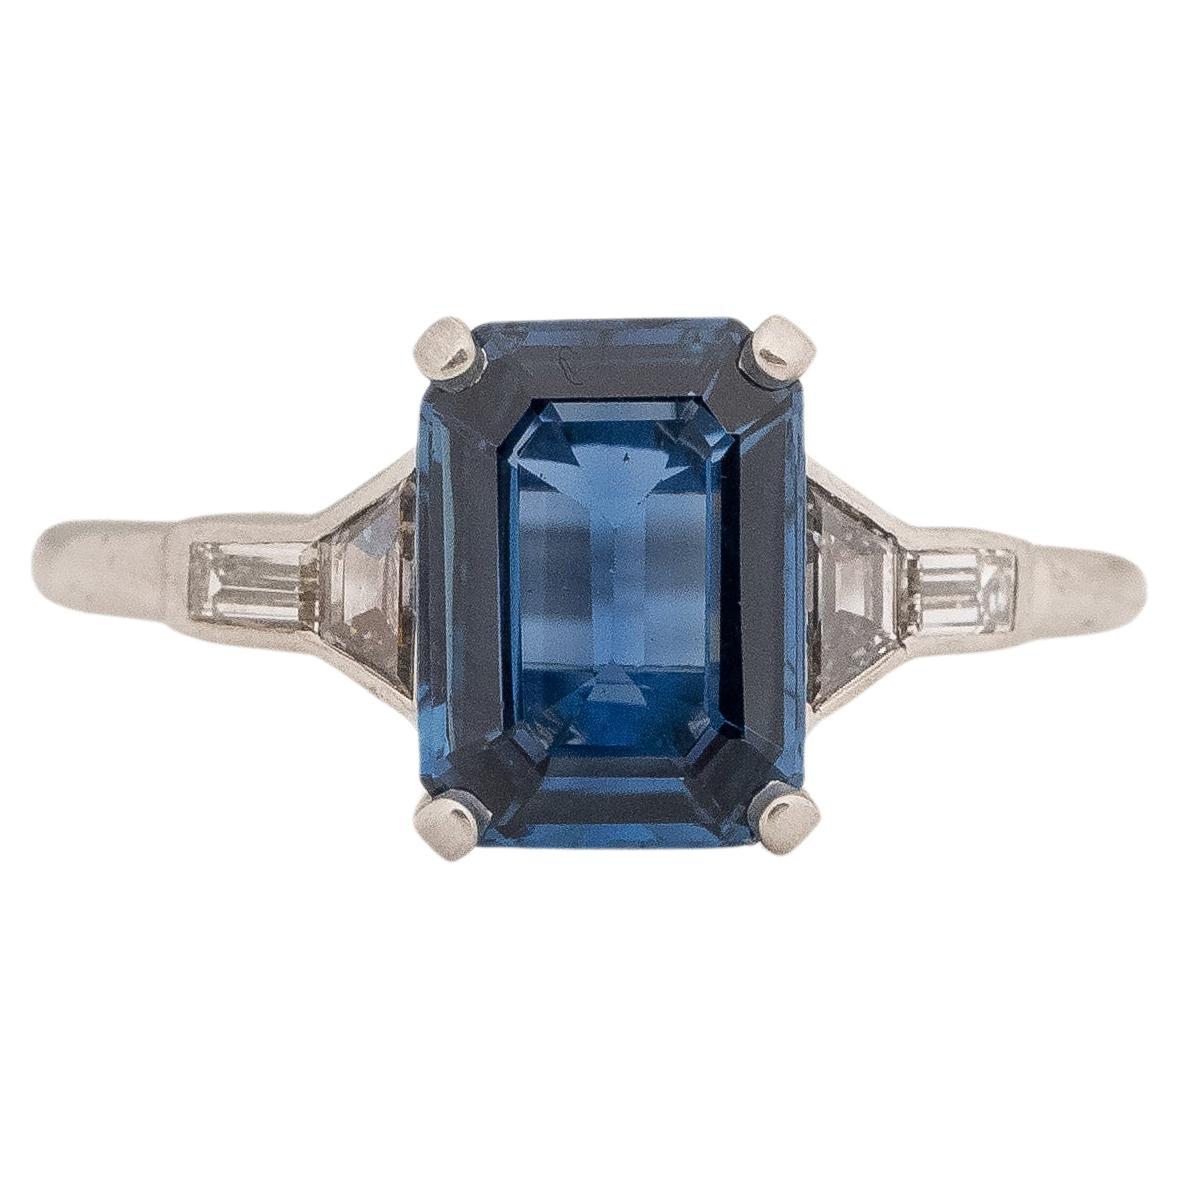 GIA 2.32 Carat Art Deco Sapphire Diamond Platinum Engagement Ring